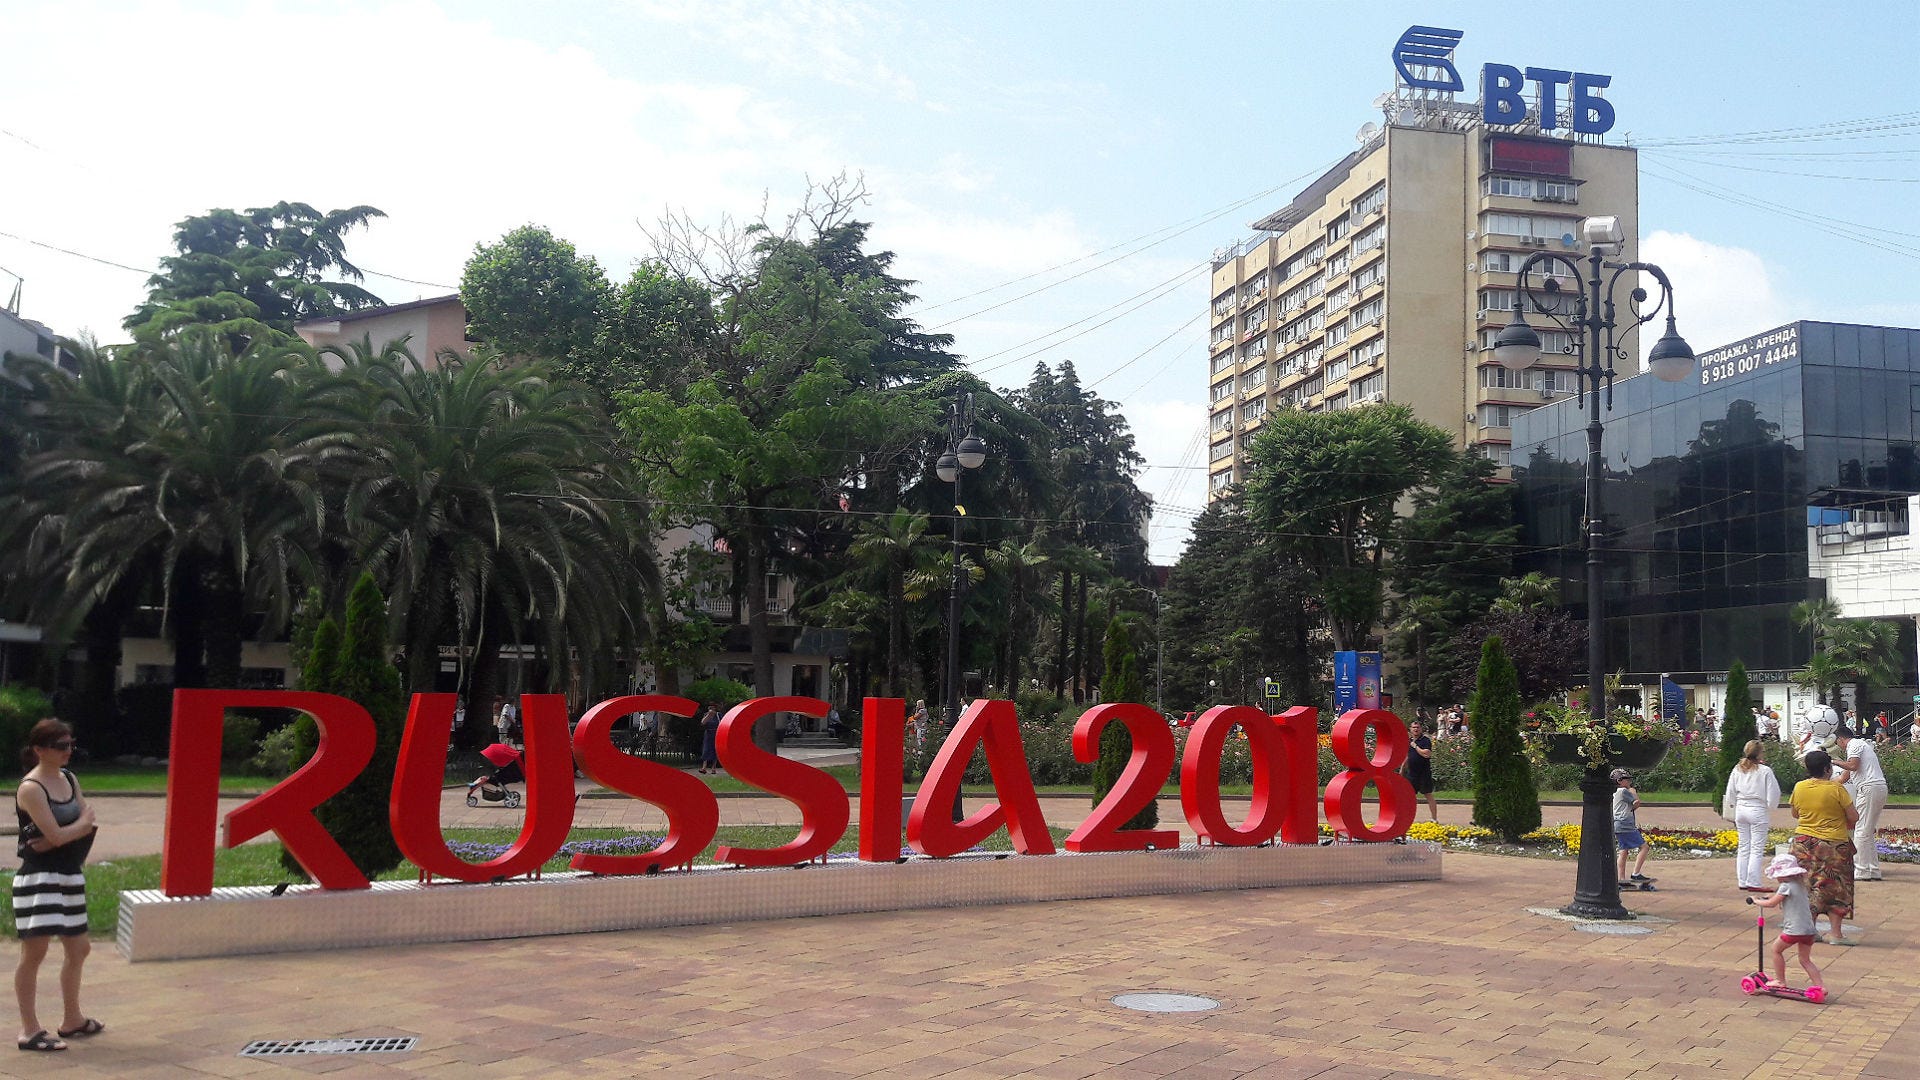 Fifa divulga bases das seleções na Copa da Rússia; Brasil ficará em Sochi